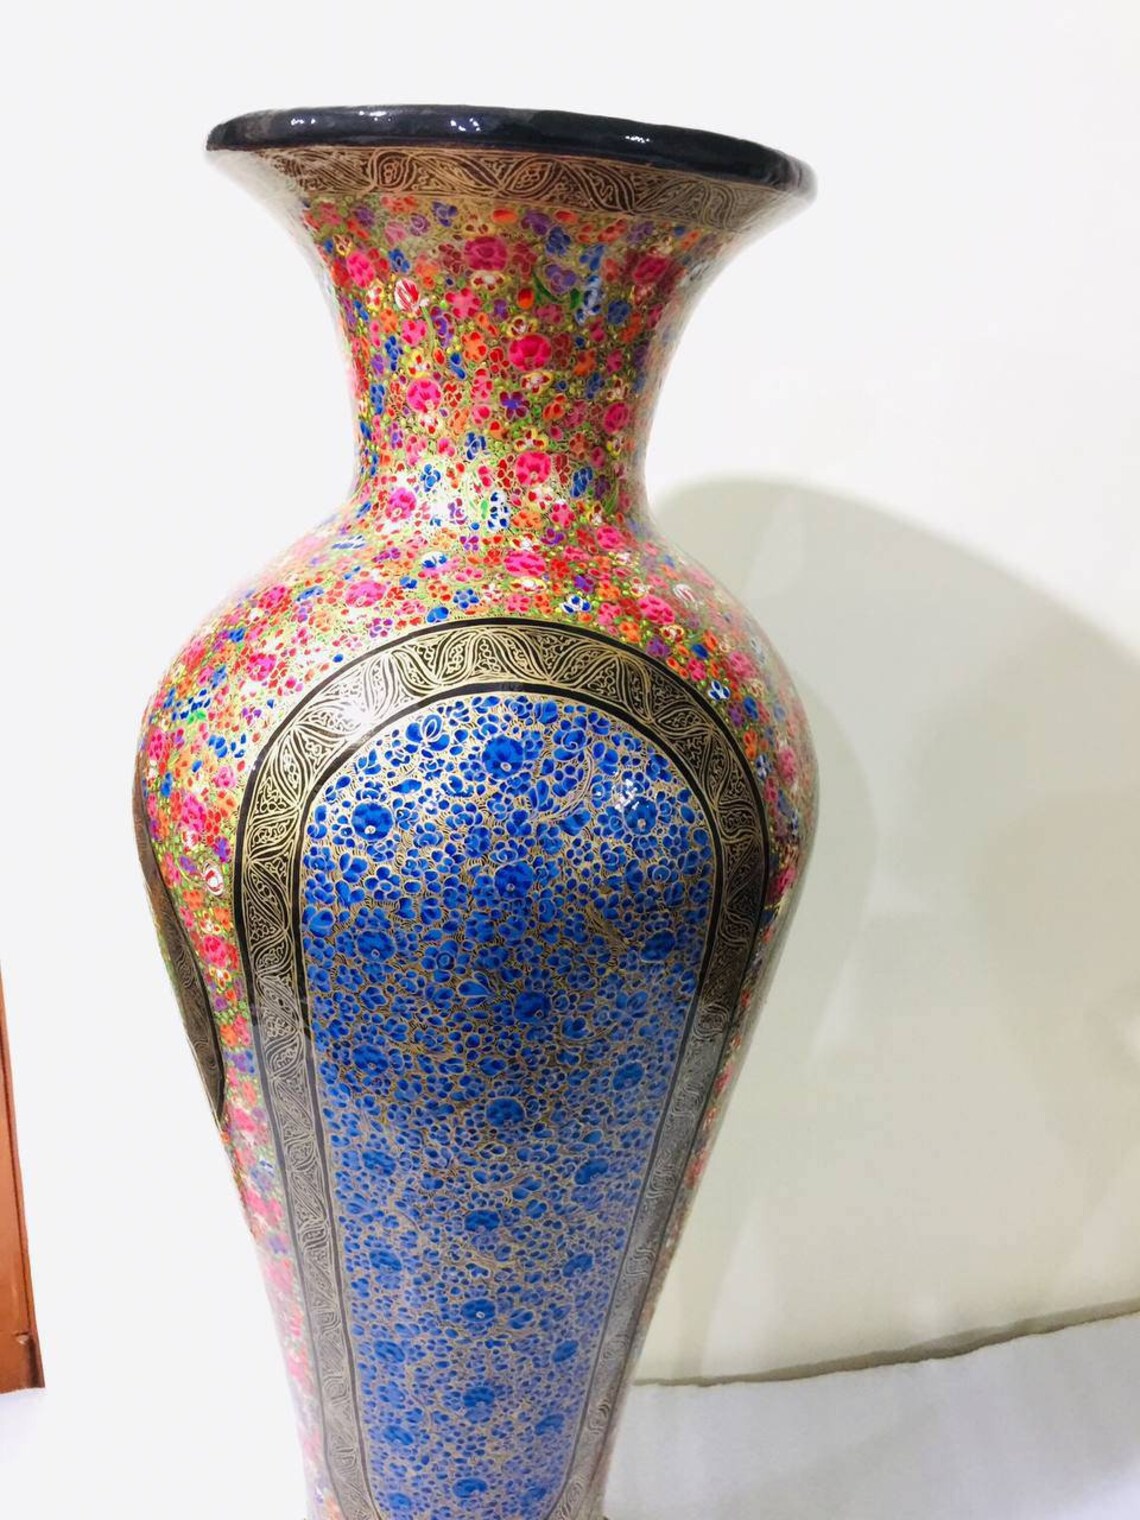 Handmade Kashmiri paper mache flower vase, Hand painted flower vase